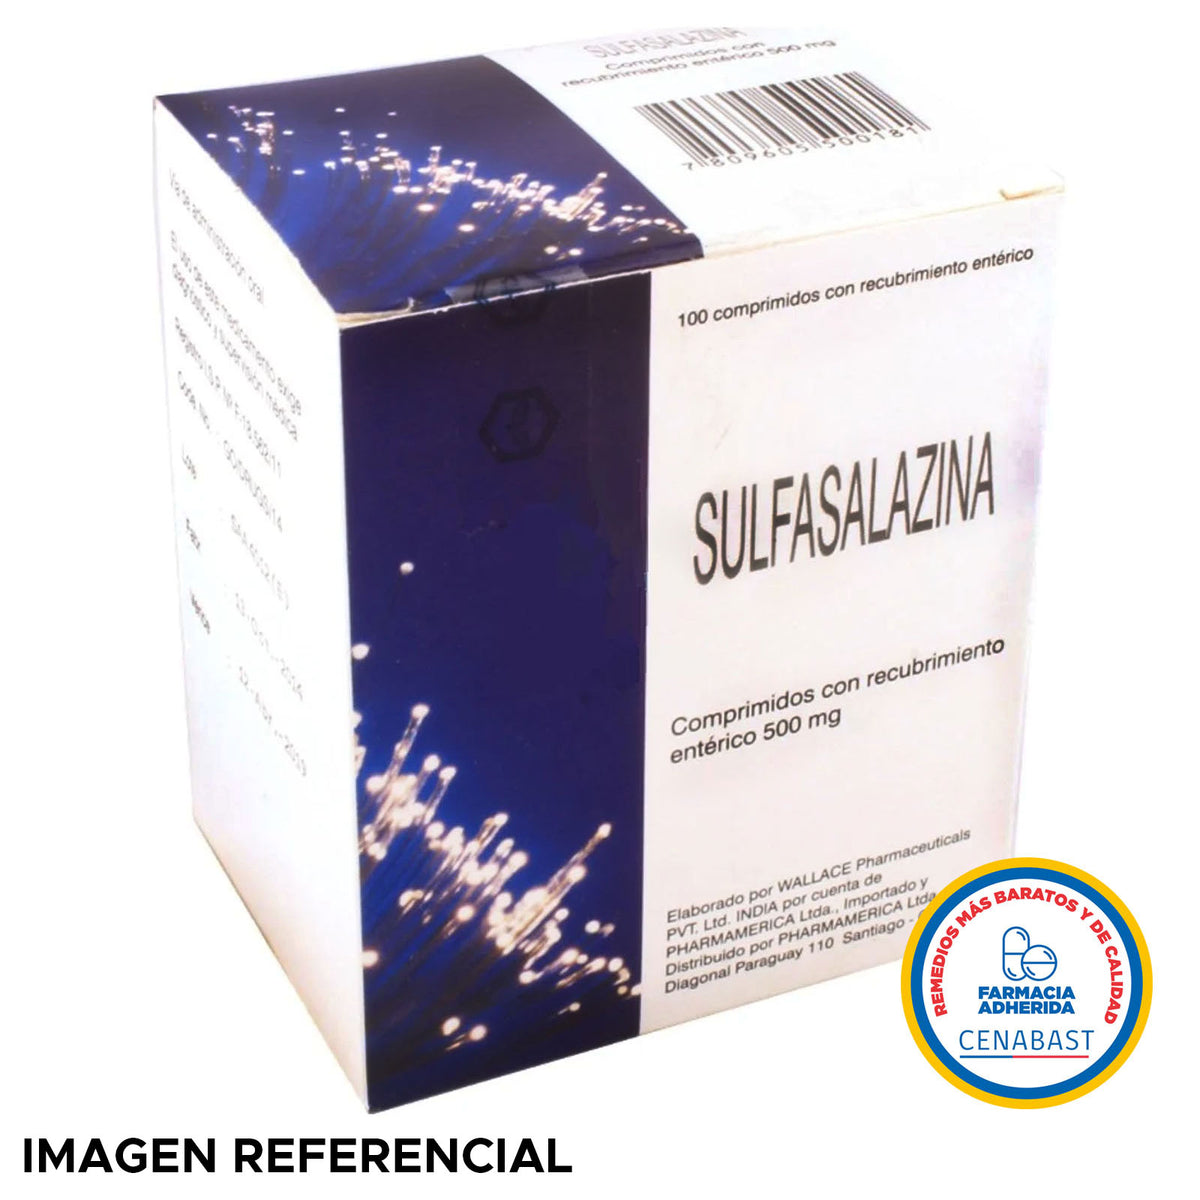 Sulfalazina Comprimidos con Recubrimiento Entérico 500mg Producto Cenabast